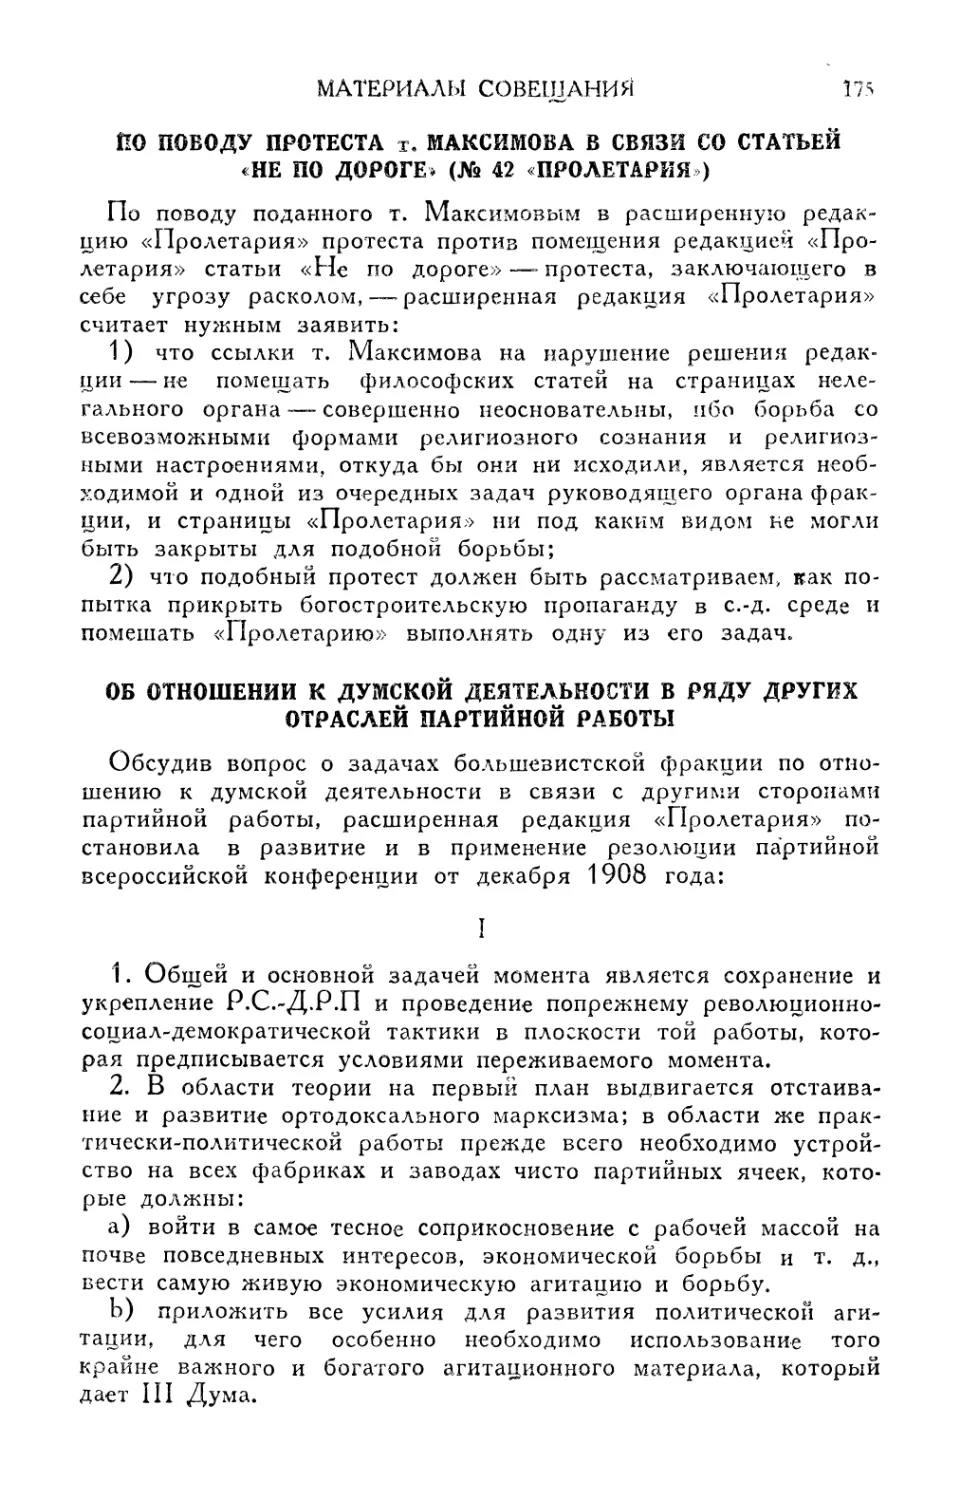 По поводу протеста т. Максимова в связи со статьей «Не по дороге»
Об отношении к думской деятельности в ряду других отраслей партийной работы